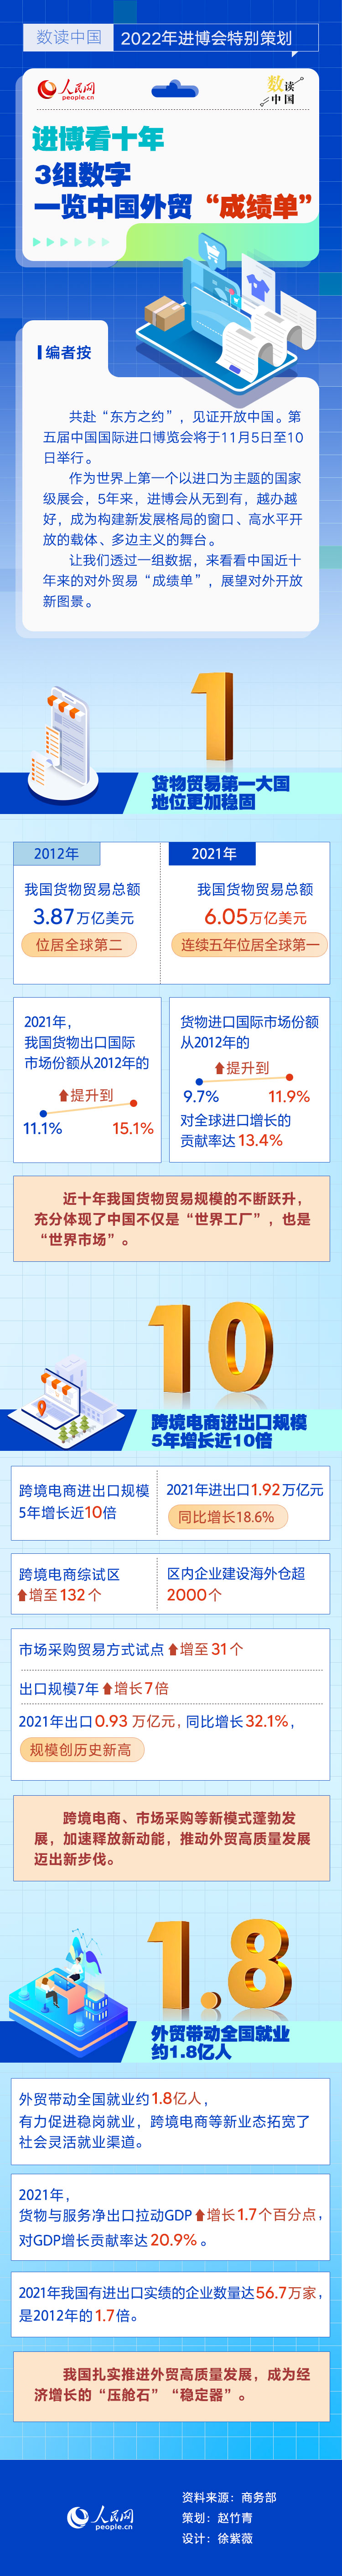 进博看十年丨3组数字一览中国外贸“成绩单”